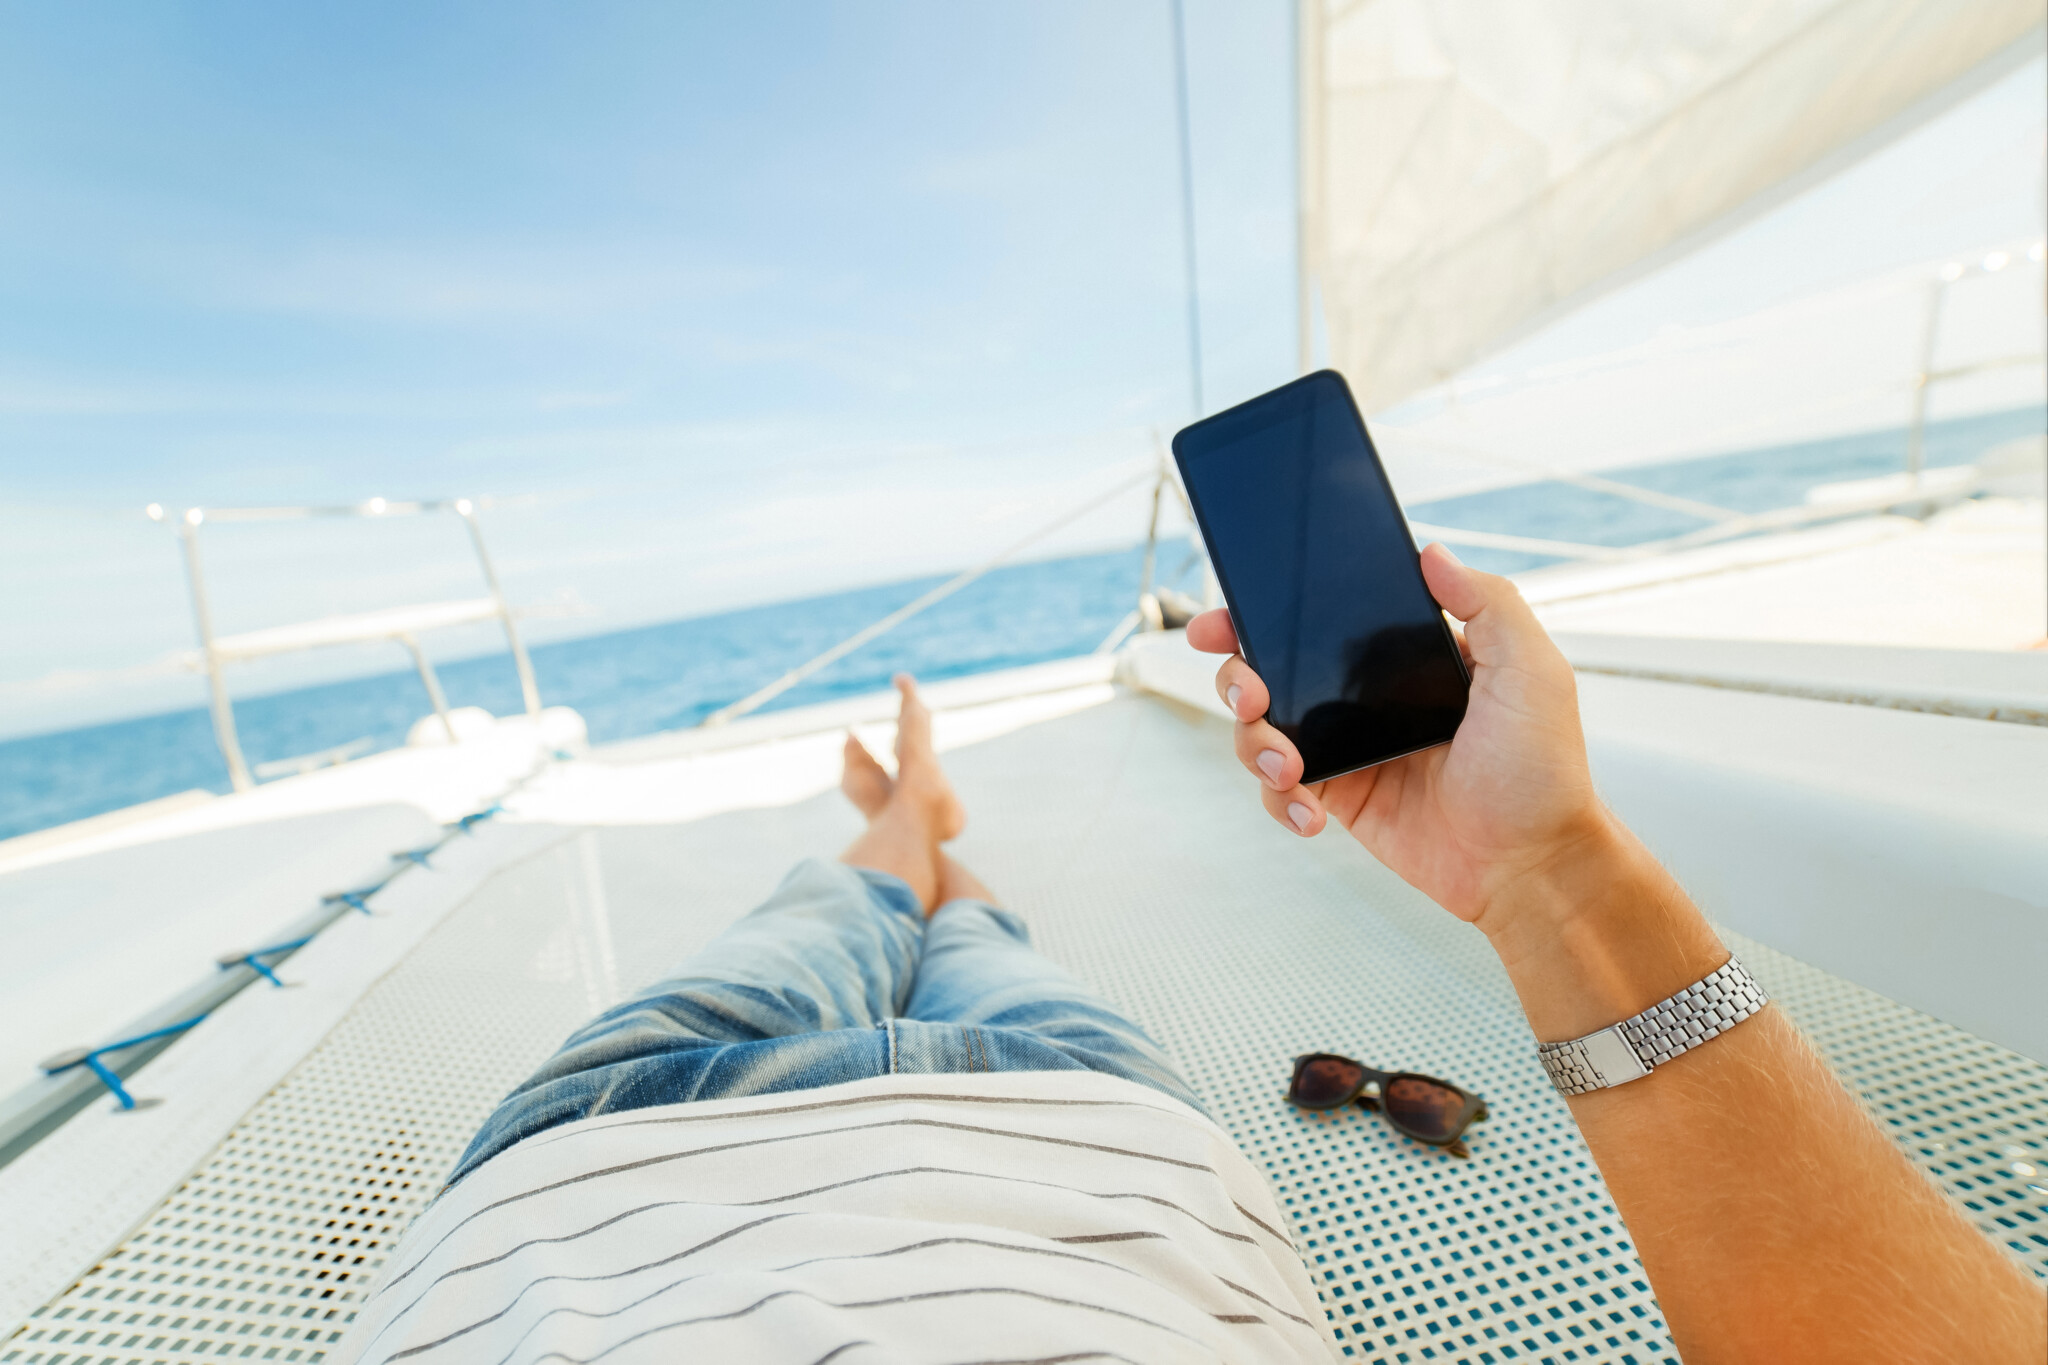 Связь мобильная турист. Отдыхающий с телефоном. Отдых со смартфоном. Телефон отдыхает. Телефон в руках на пляже.